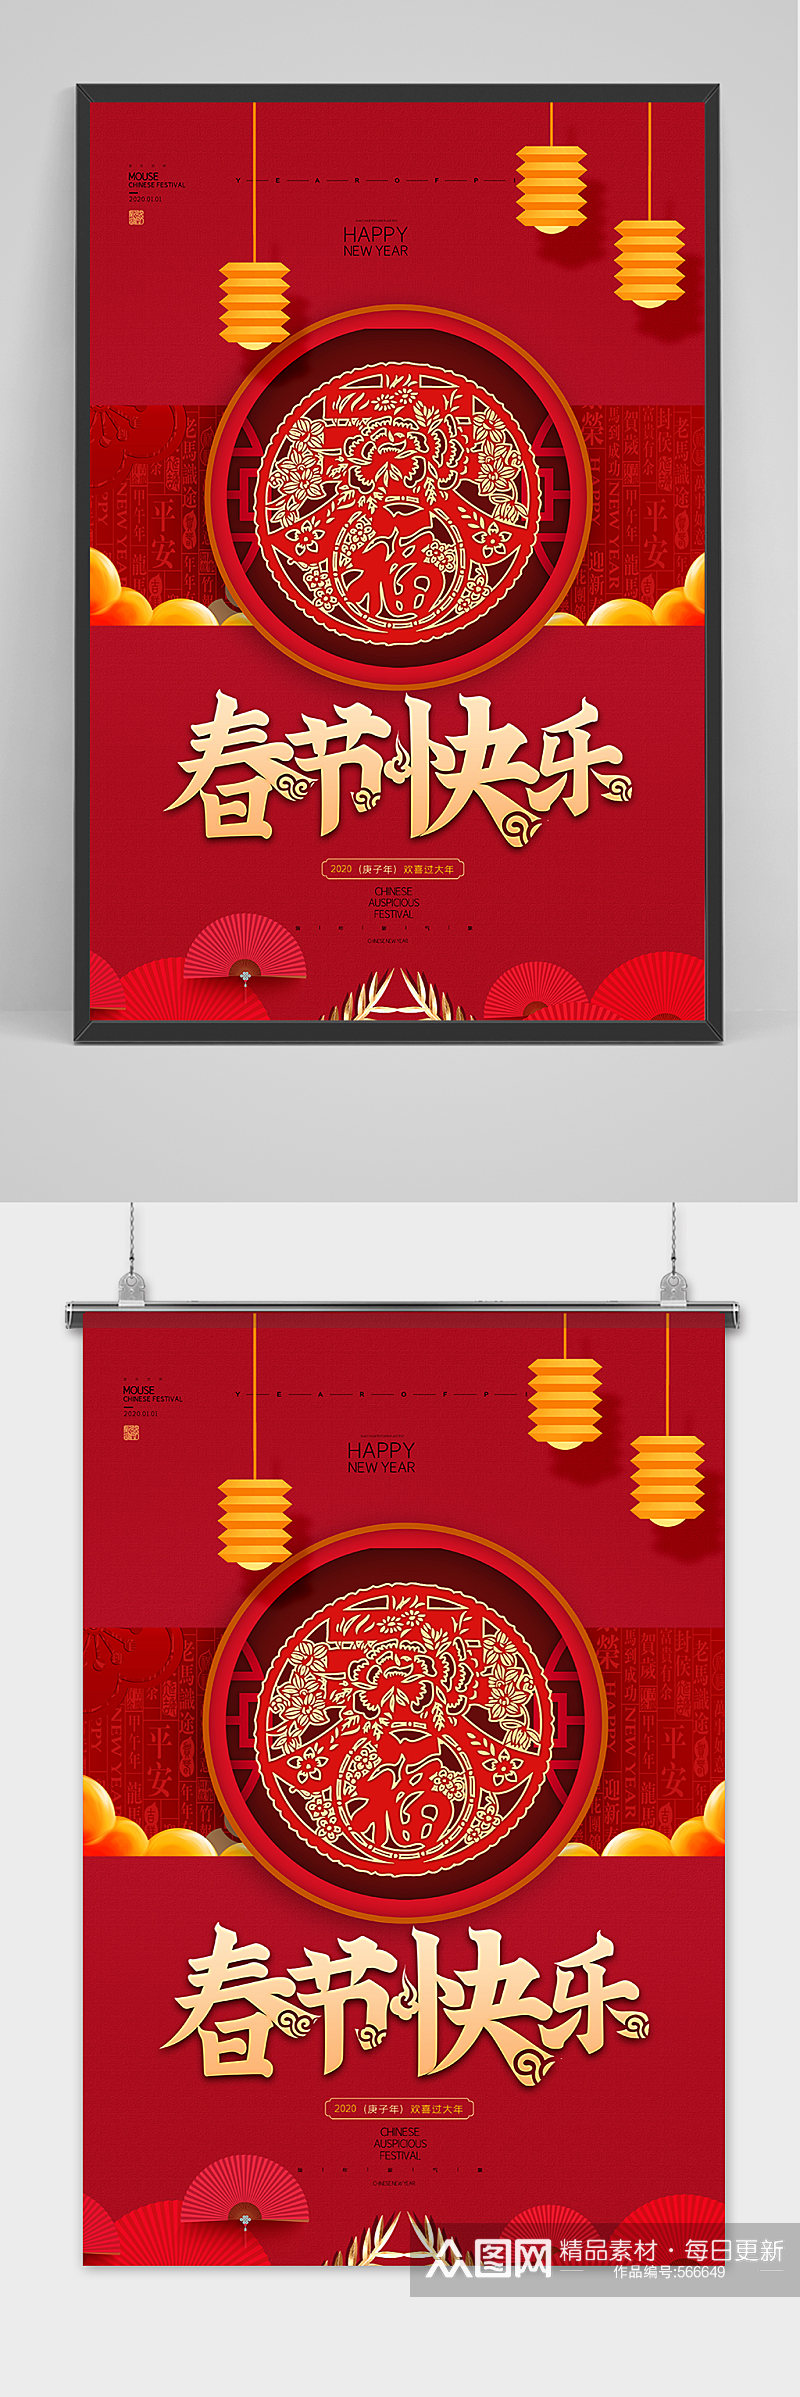 春节原创宣传海报模板设计素材